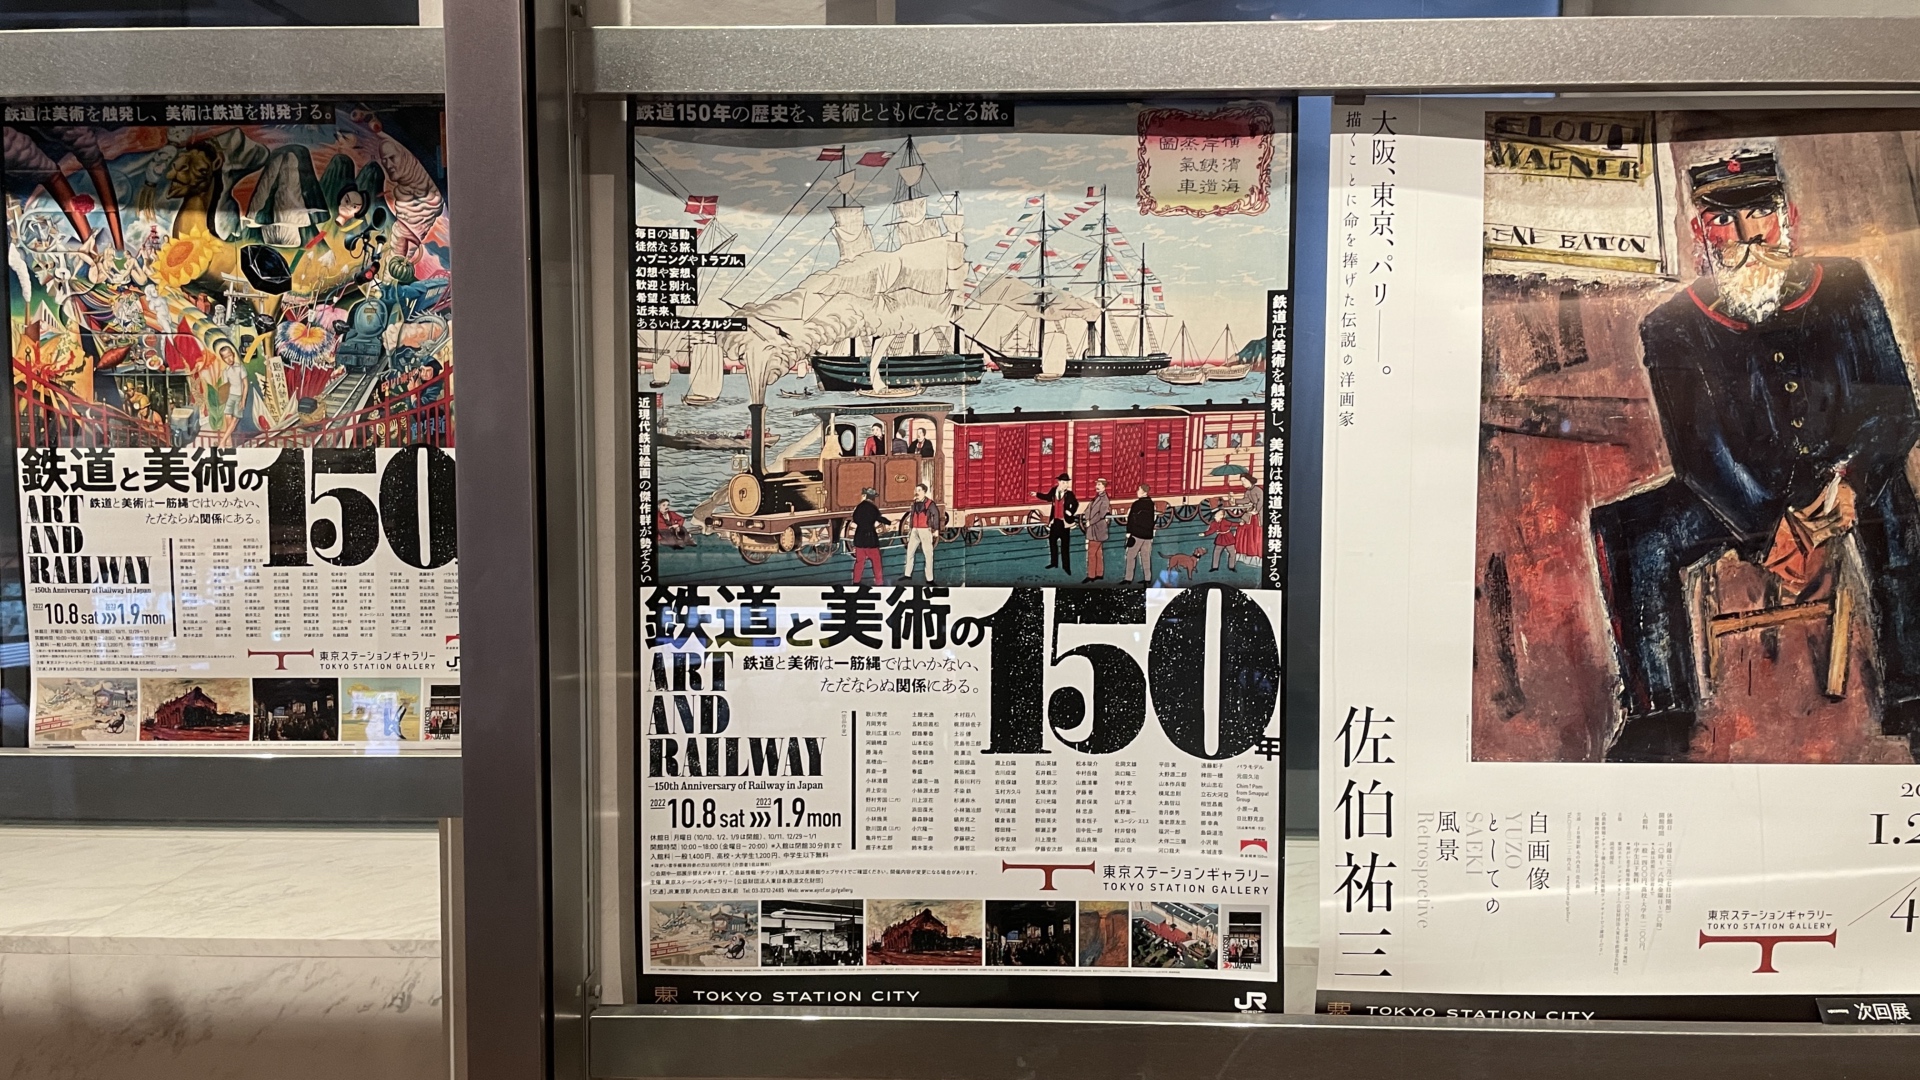 Das Plakat zur Ausstellung "Art and Railway".